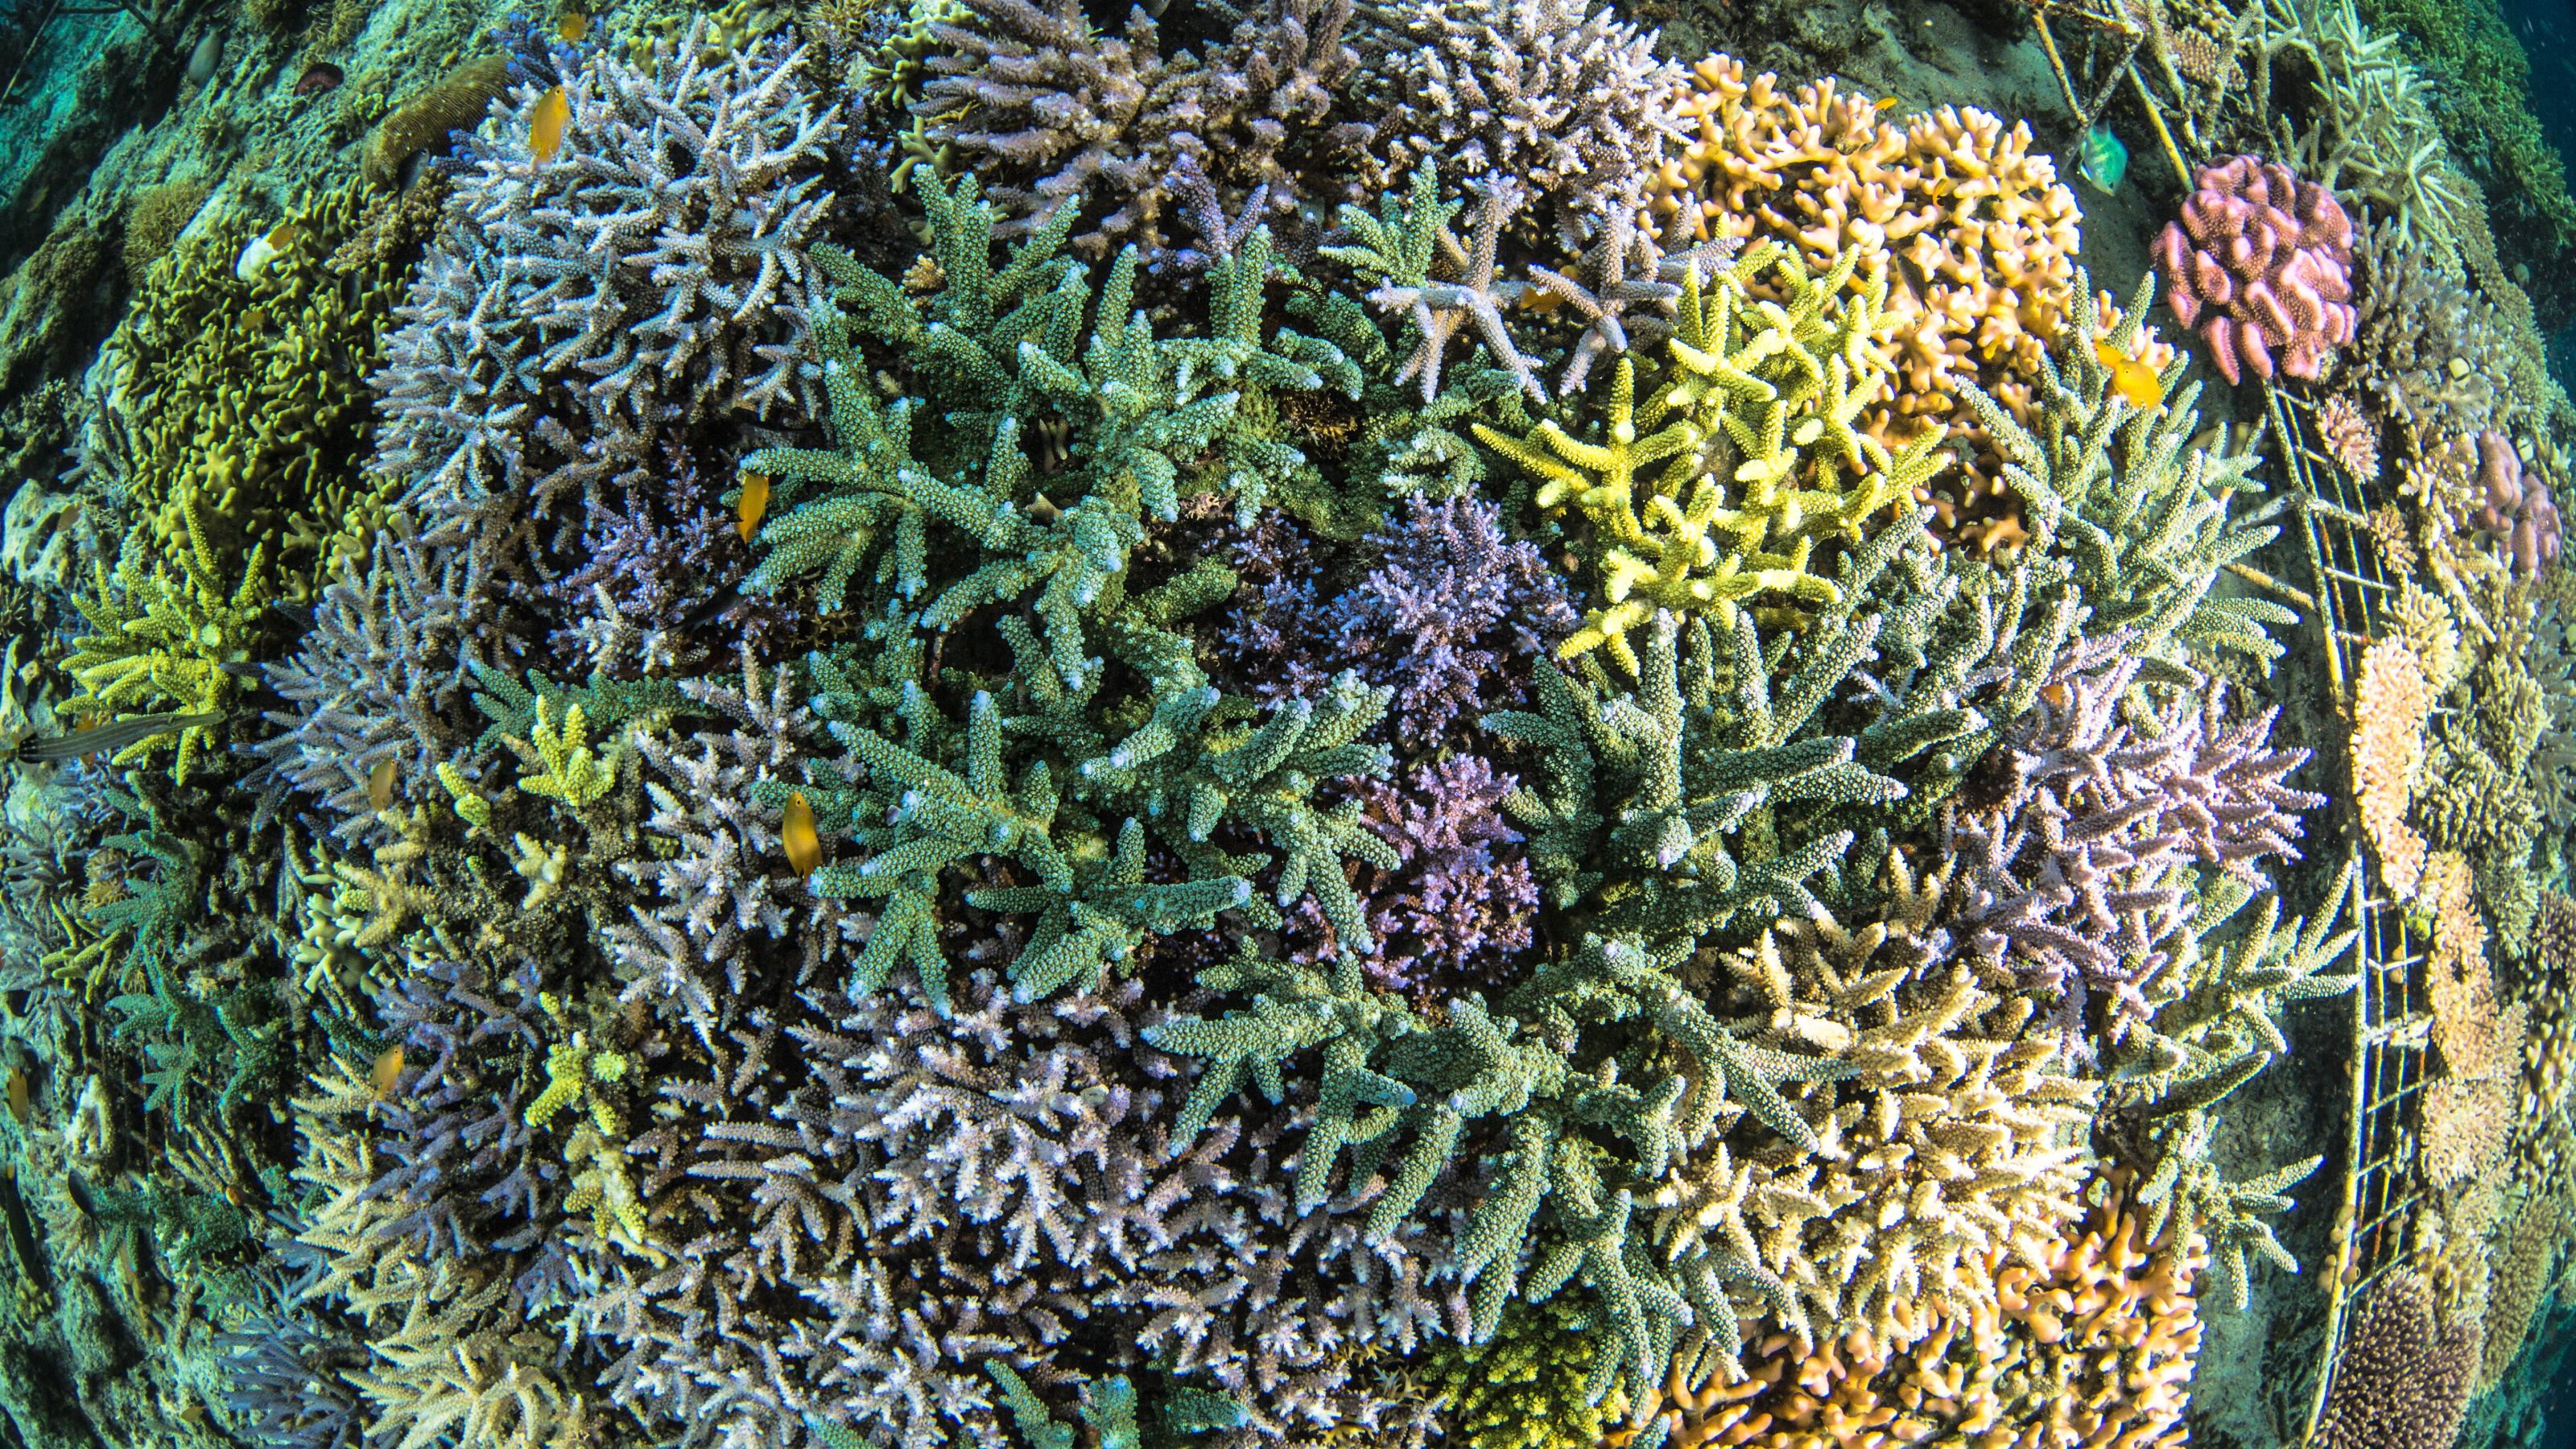 Fotografische Draufsicht auf ein indonesisches Riff aus bunten Korallen